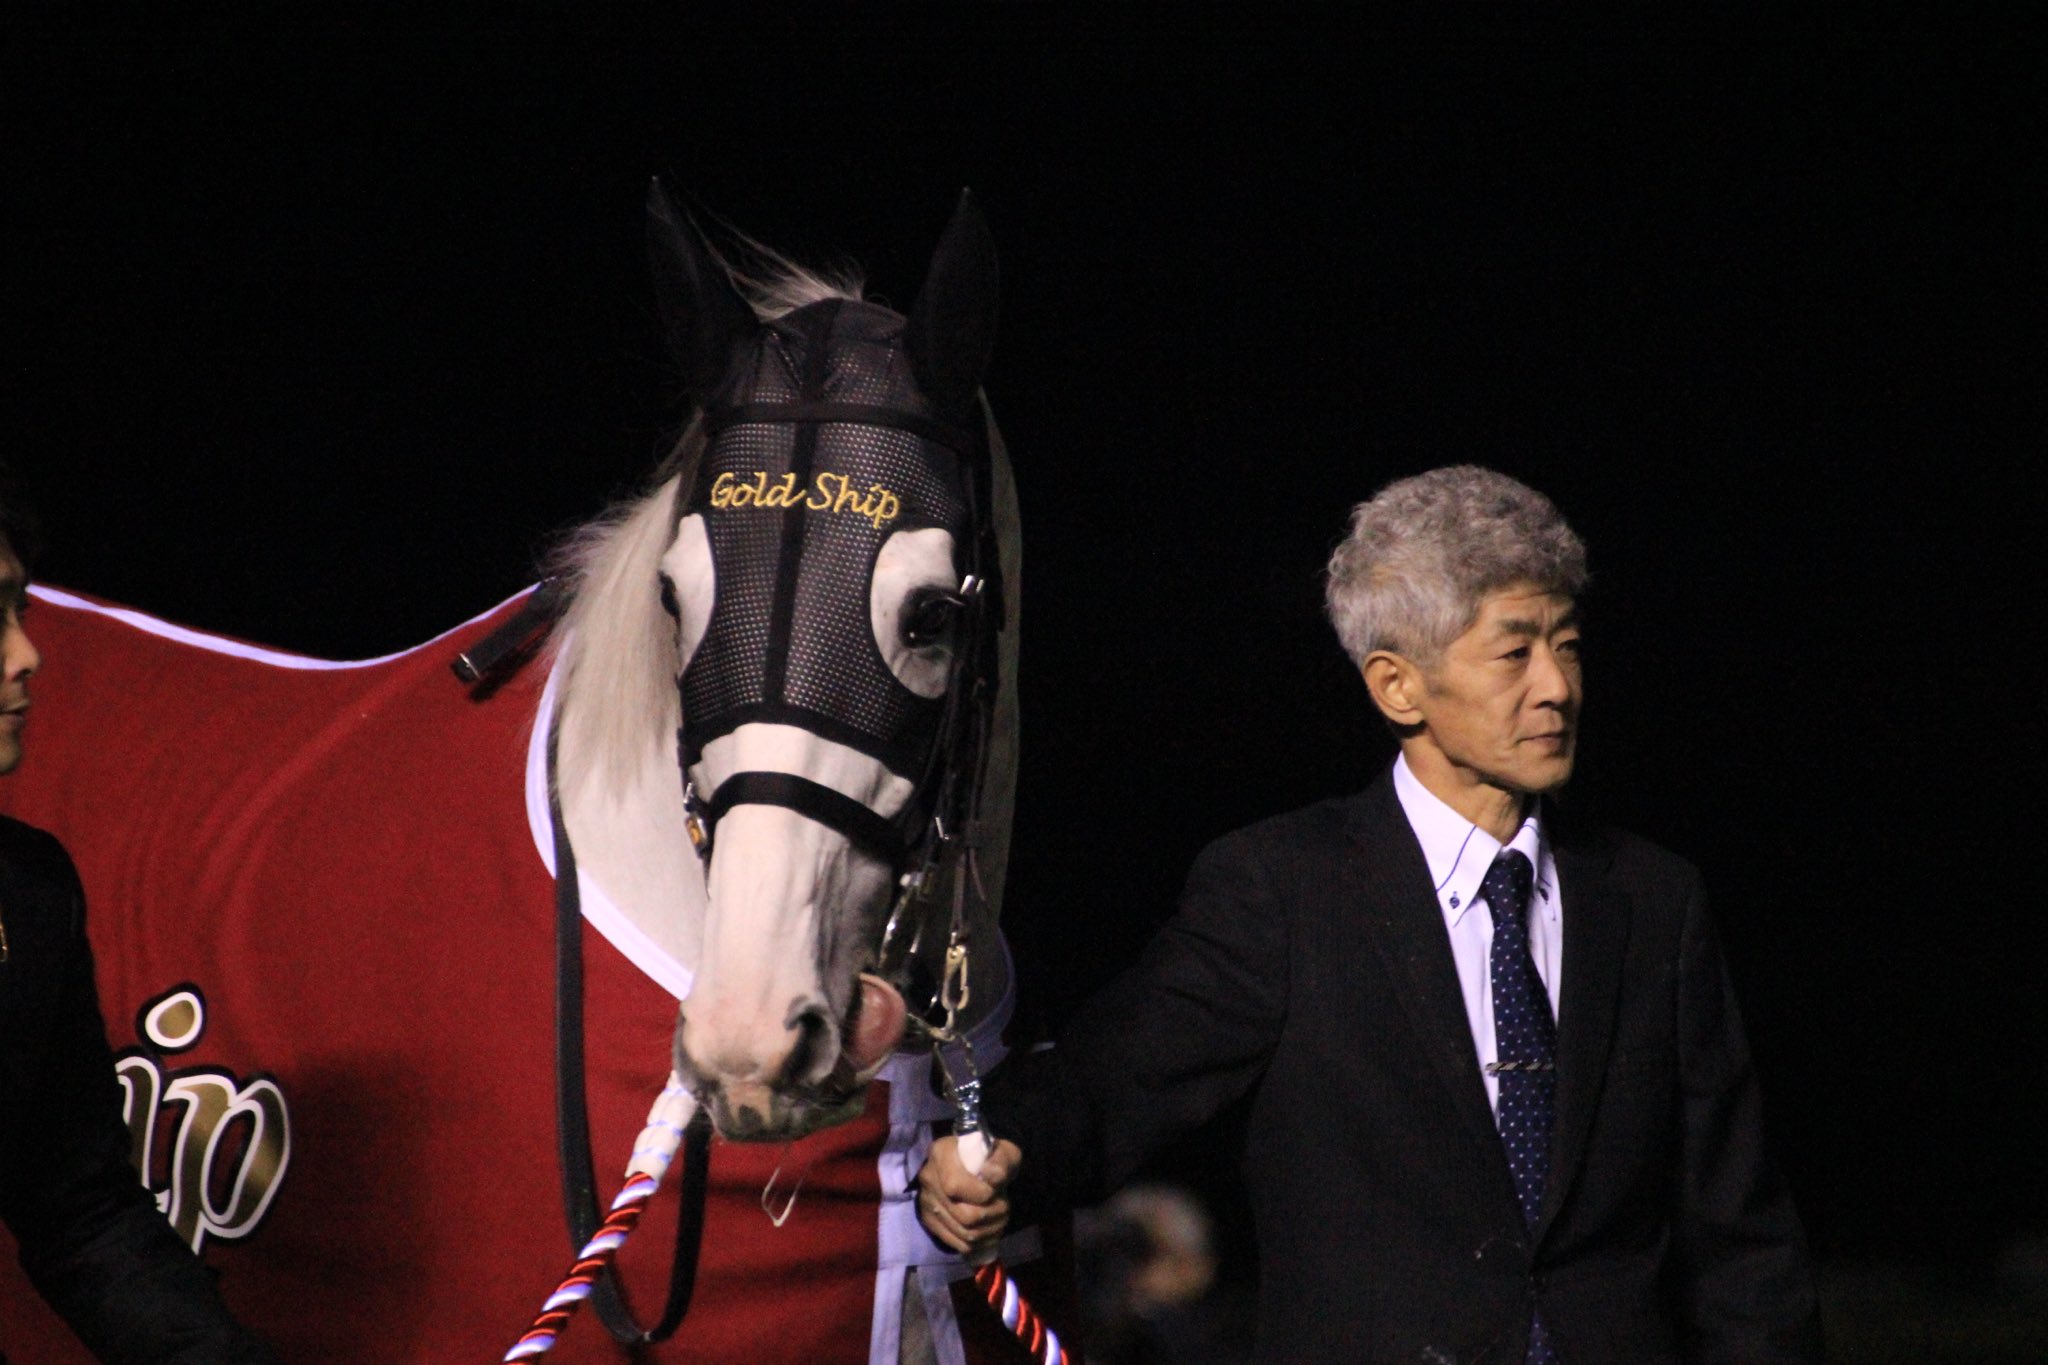 2015年、ゴールドシップ引退の有馬記念。ウインズでも驚きの地響きが始まった、白き名馬の"捲り"を振り返る